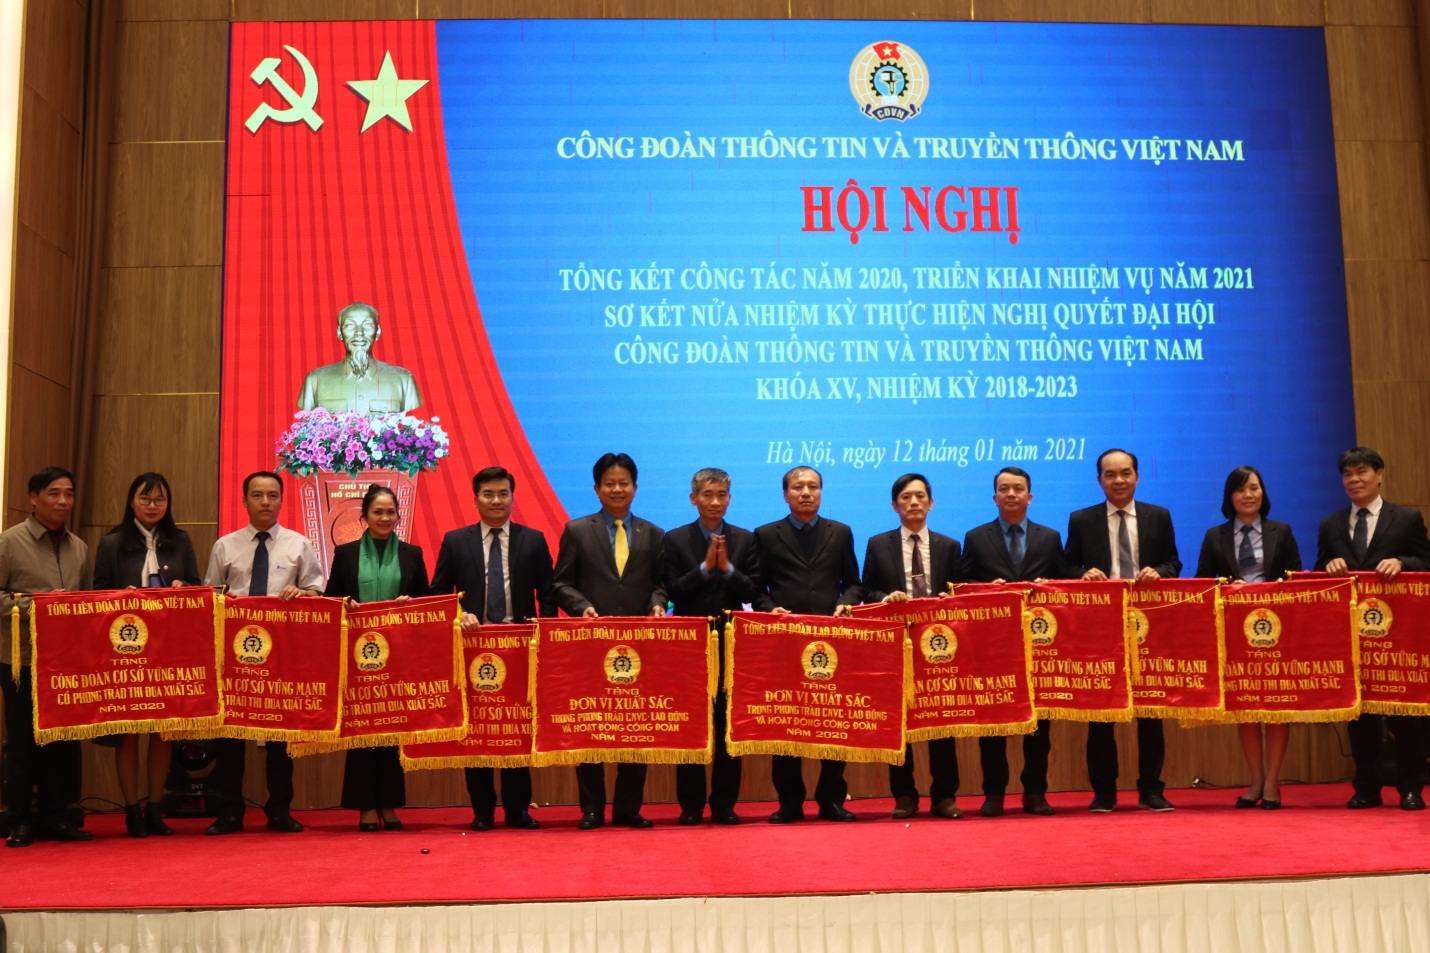 Hội nghị Sơ kết nửa nhiệm kỳ XV - Tổng kết công tác năm 2020 và triển khai nhiệm vụ năm 2021 Công đoàn Thông tin và Truyền thông Việt Nam